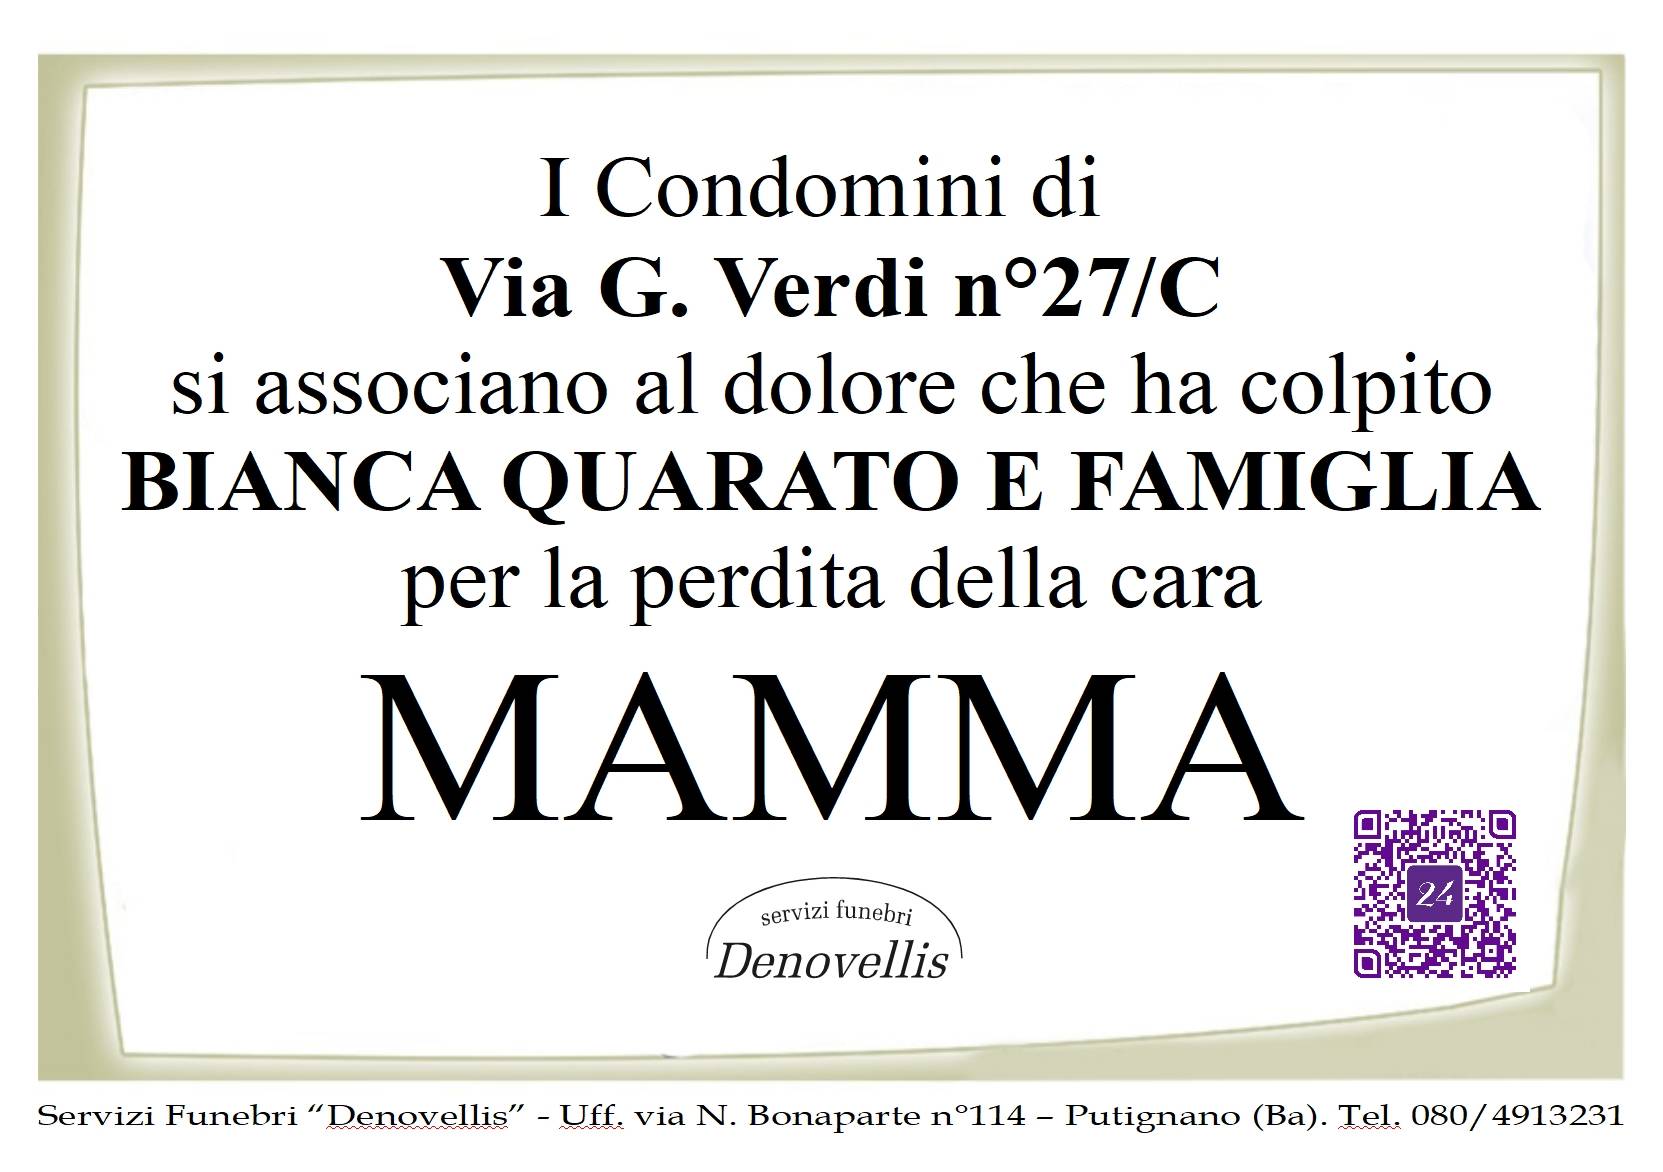 "I Condomini di Via G. Verdi 27/C"